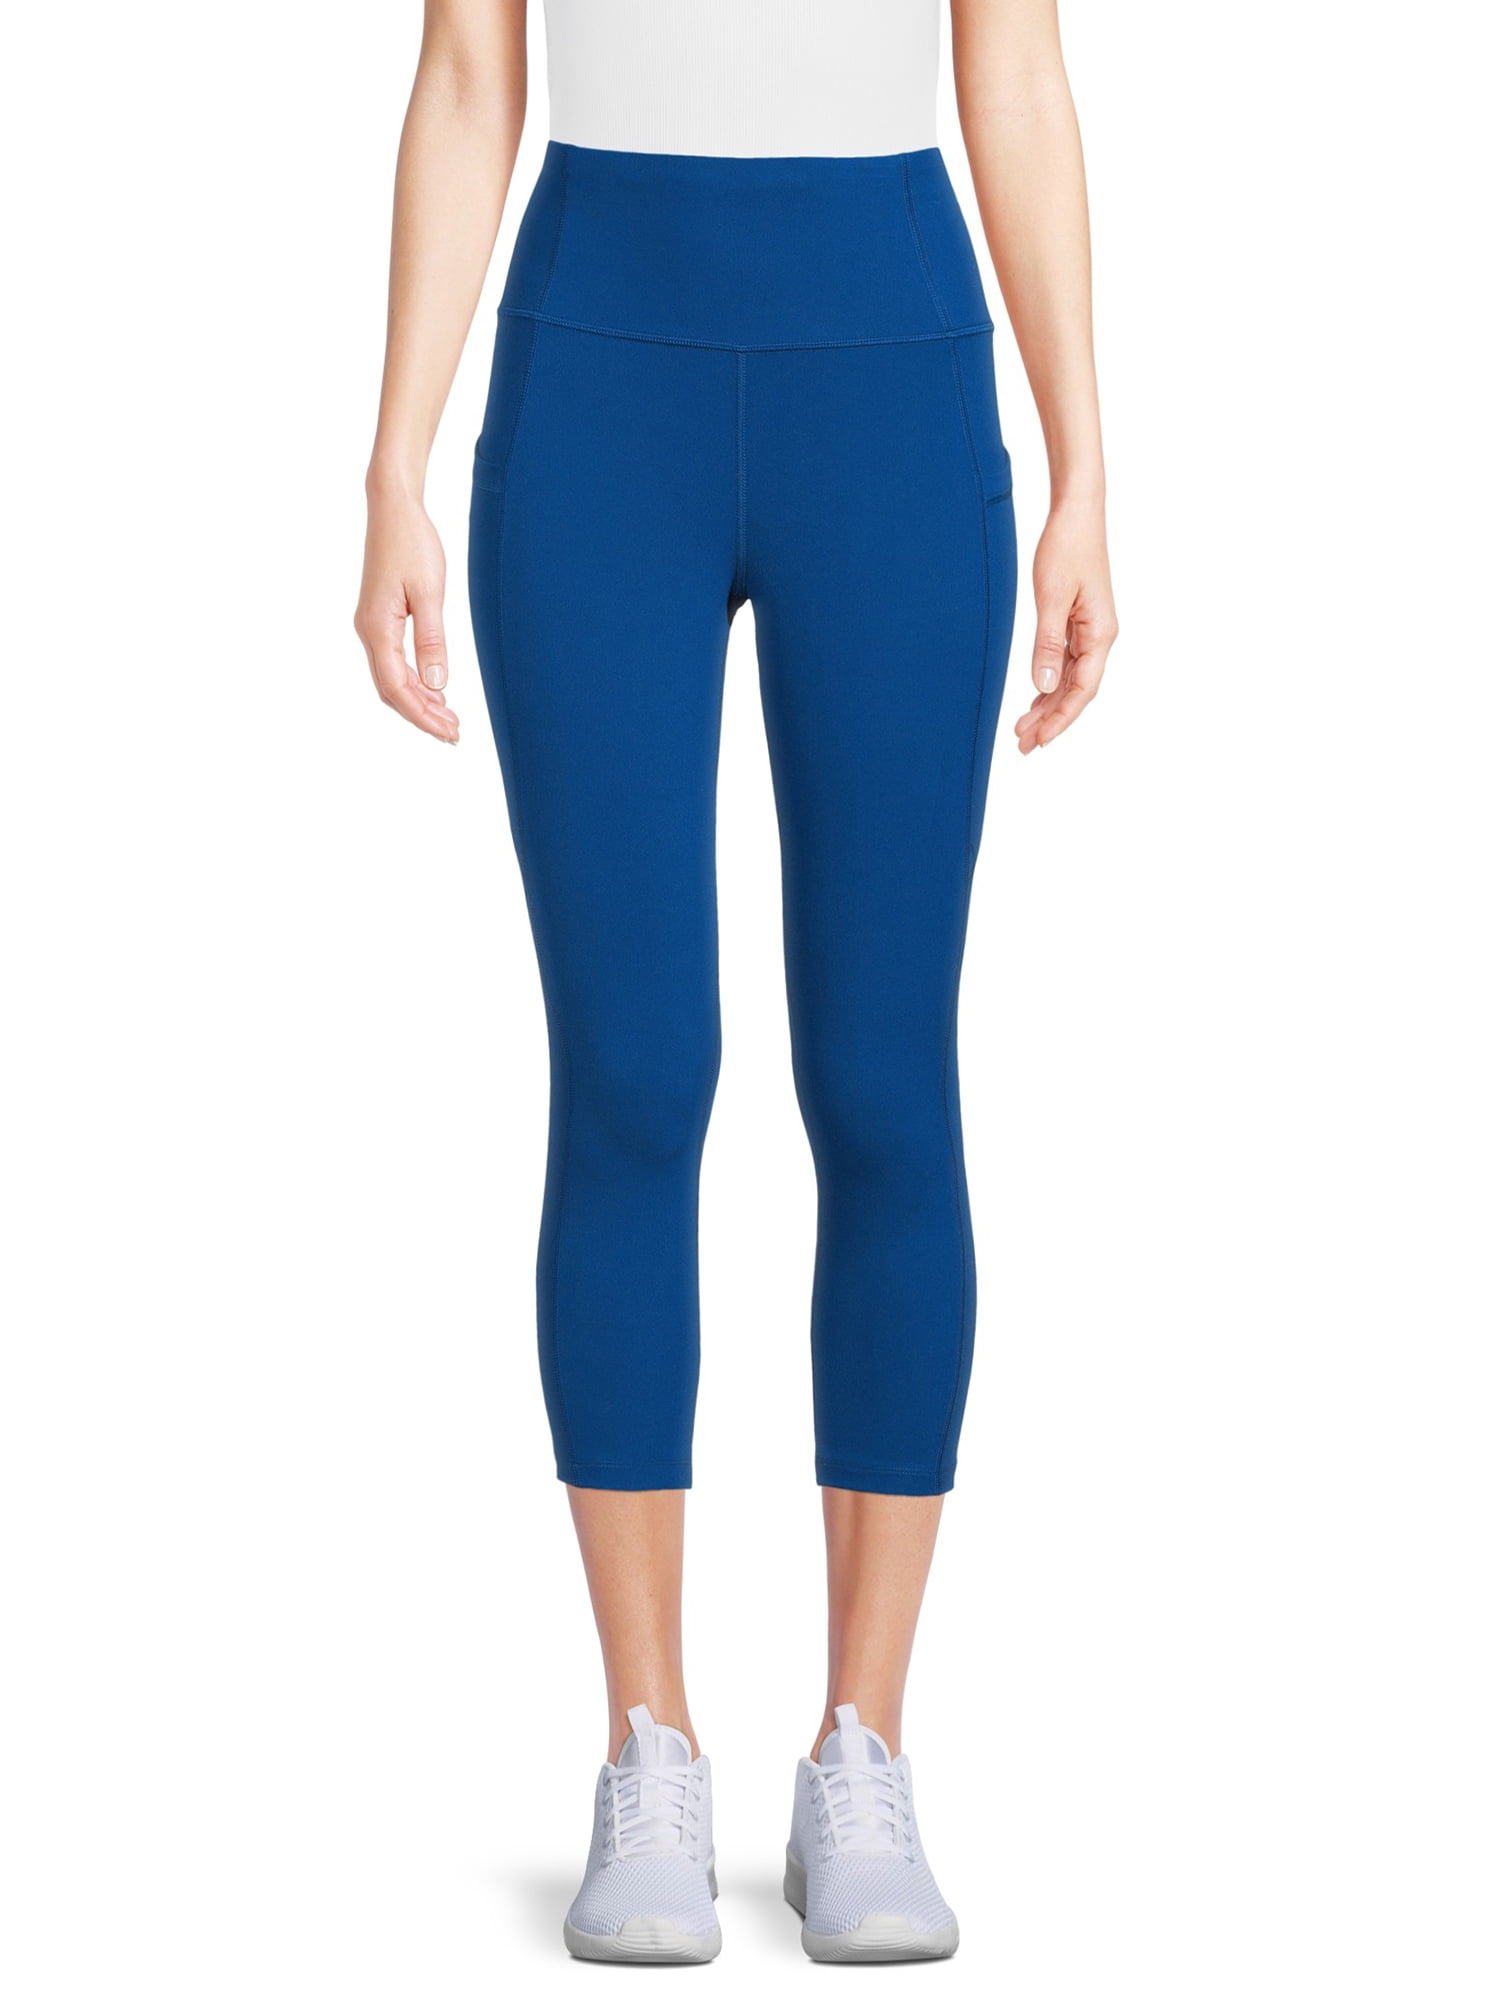 Lululemon Capri Mesh Leggings Blue Active Side Pockets Womens Size 4